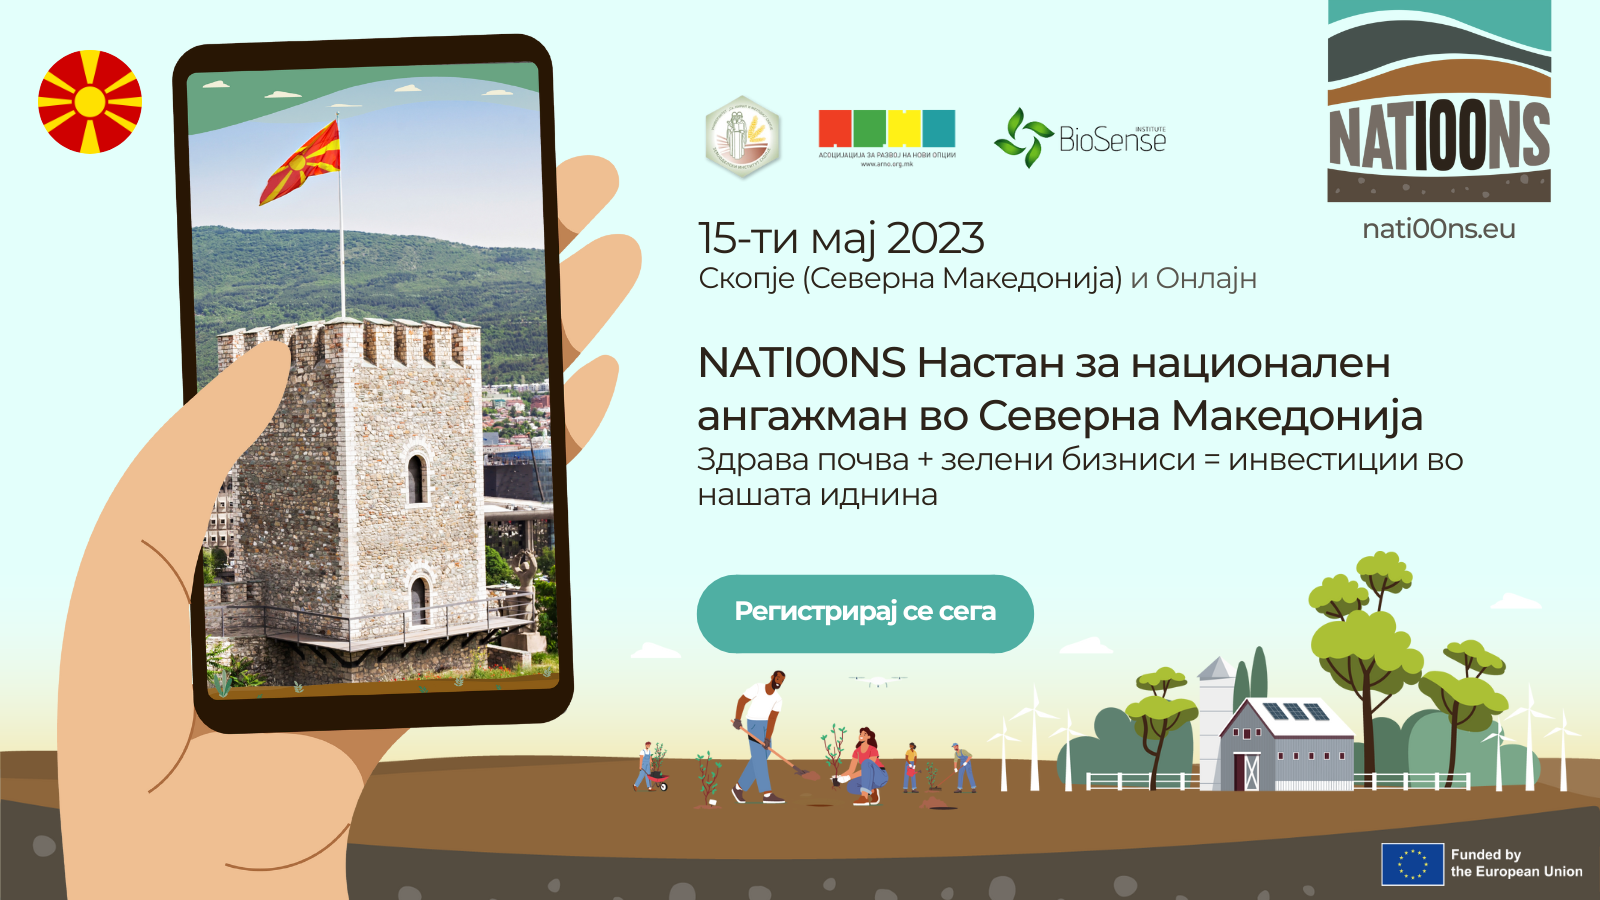 NATI00NS Настан за национален ангажман во Северна Македонија: Здрава почва + зелени бизниси = инвестиции во нашата иднина